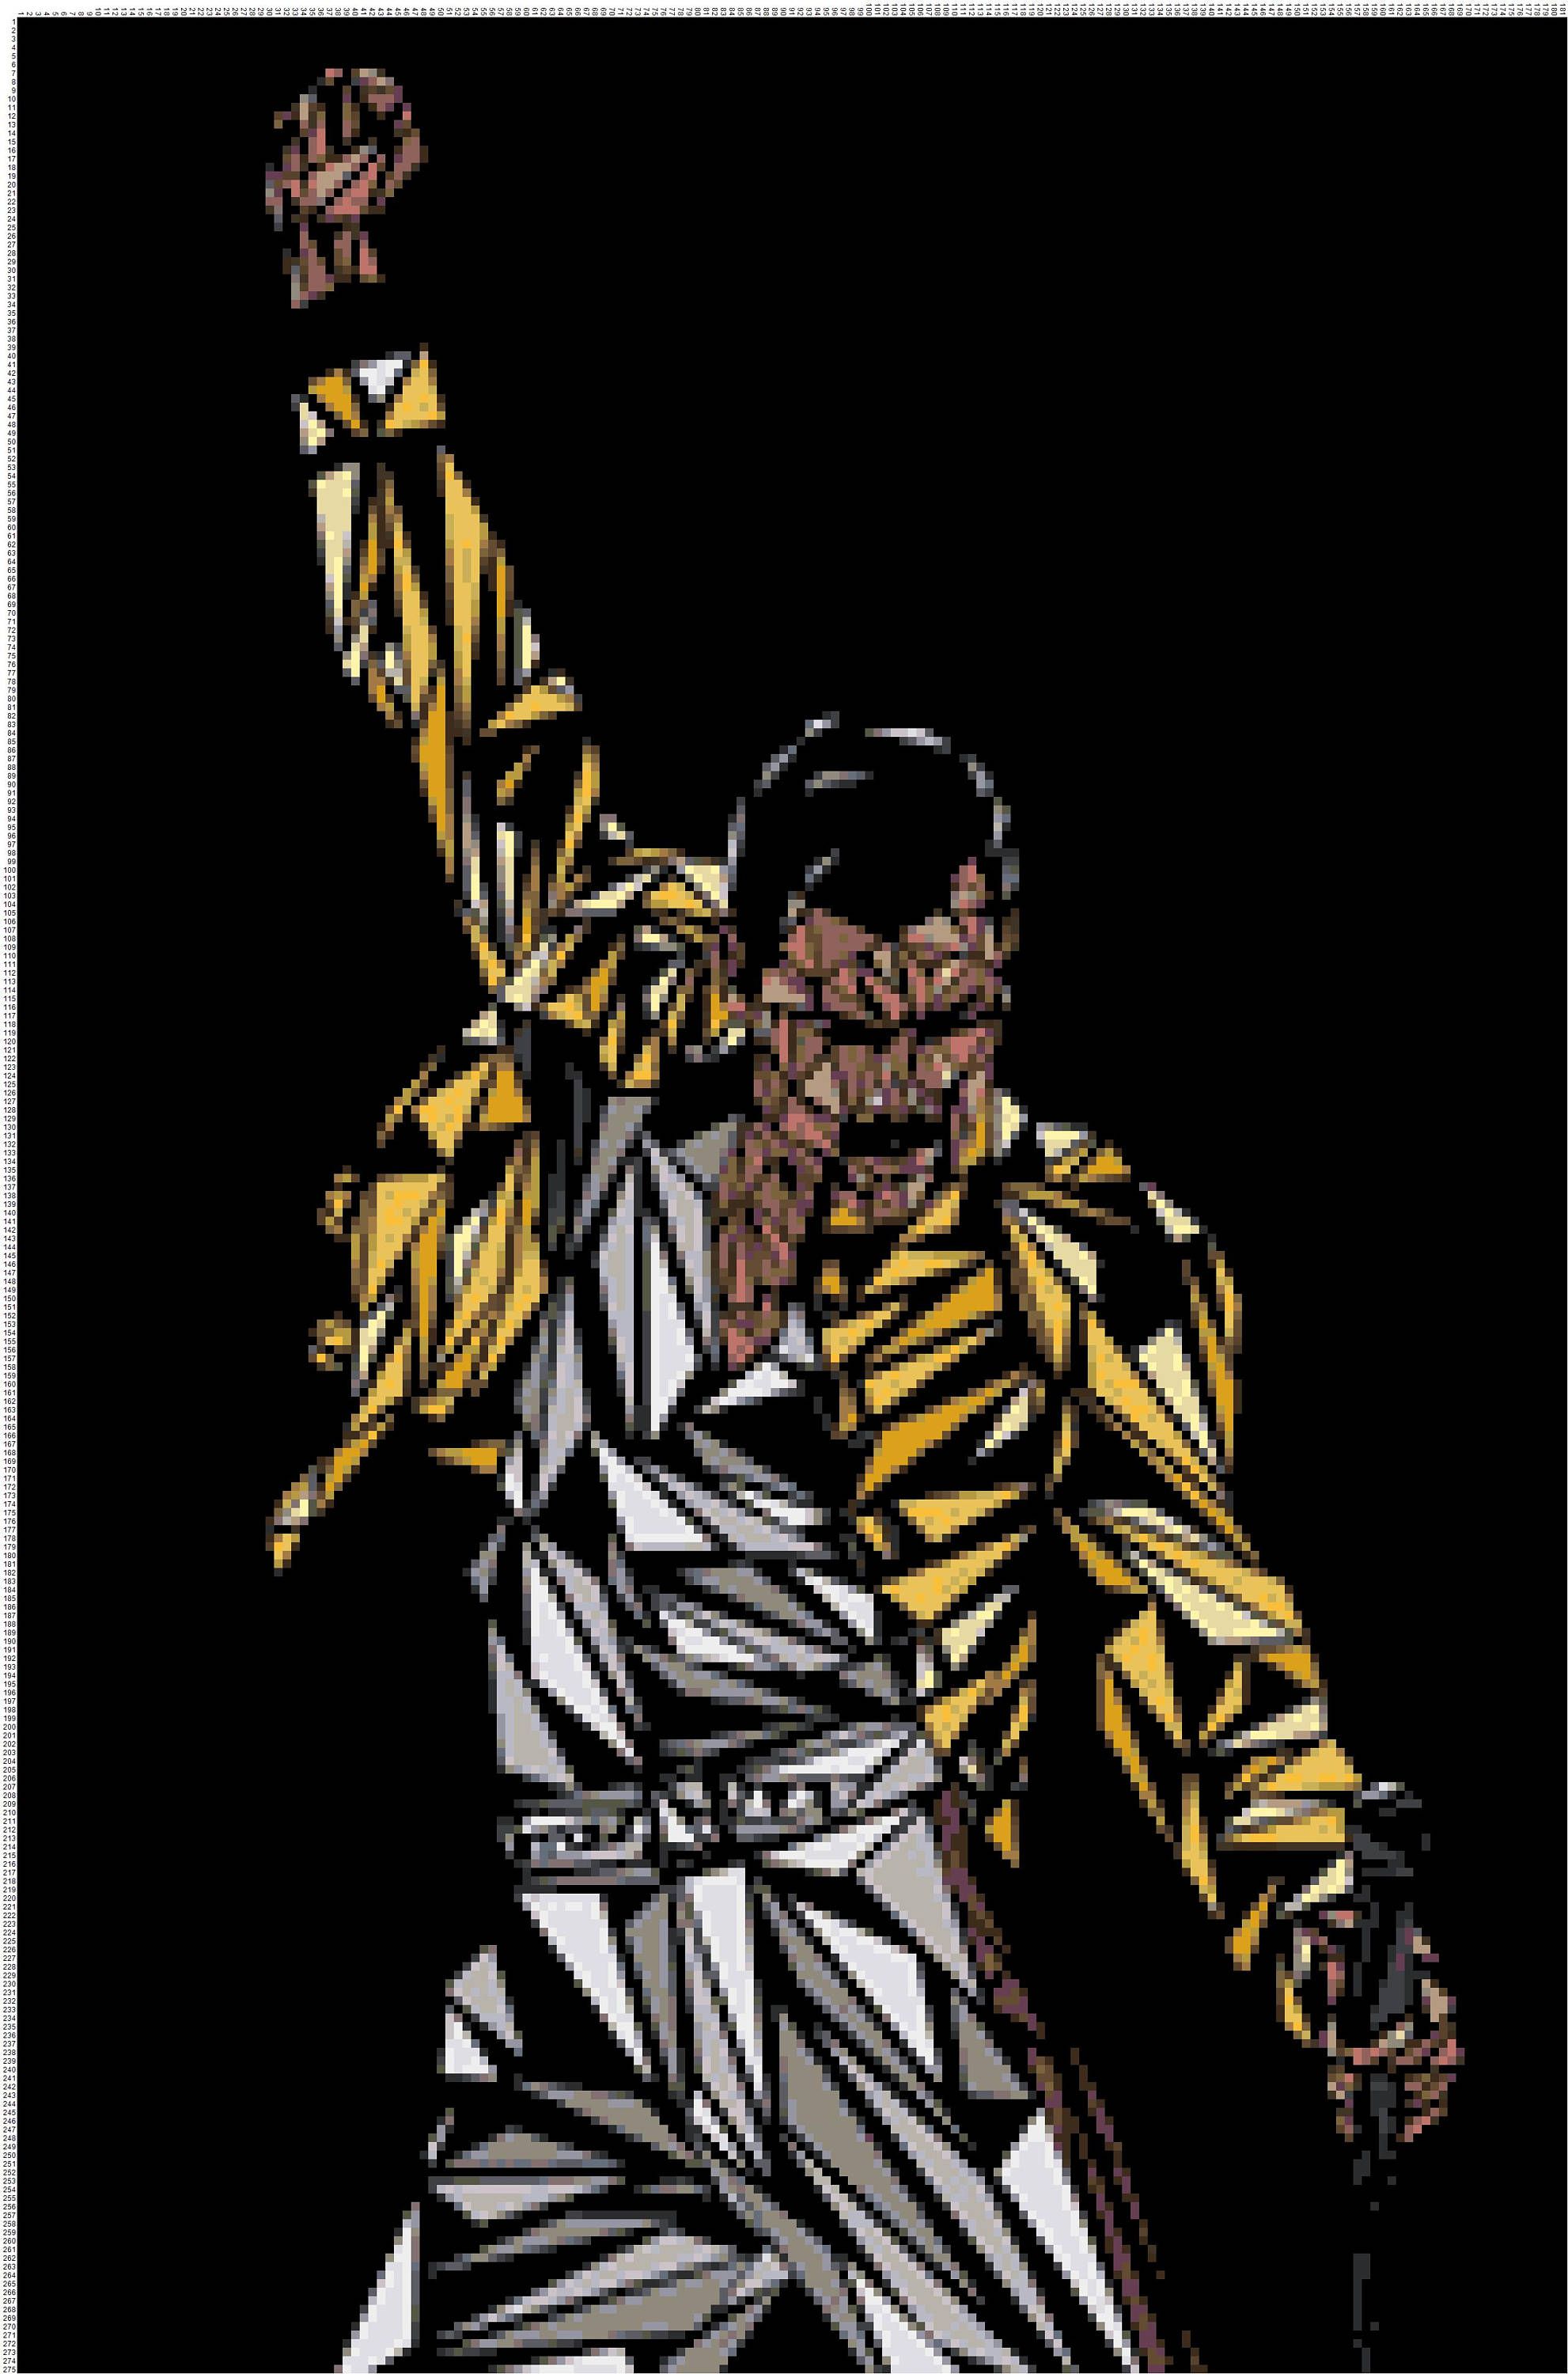 Freddie Mercury Stained Glass Queen Cross Stitch Pattern. Etsy. Queen art, Queens wallpaper, Freddie mercury